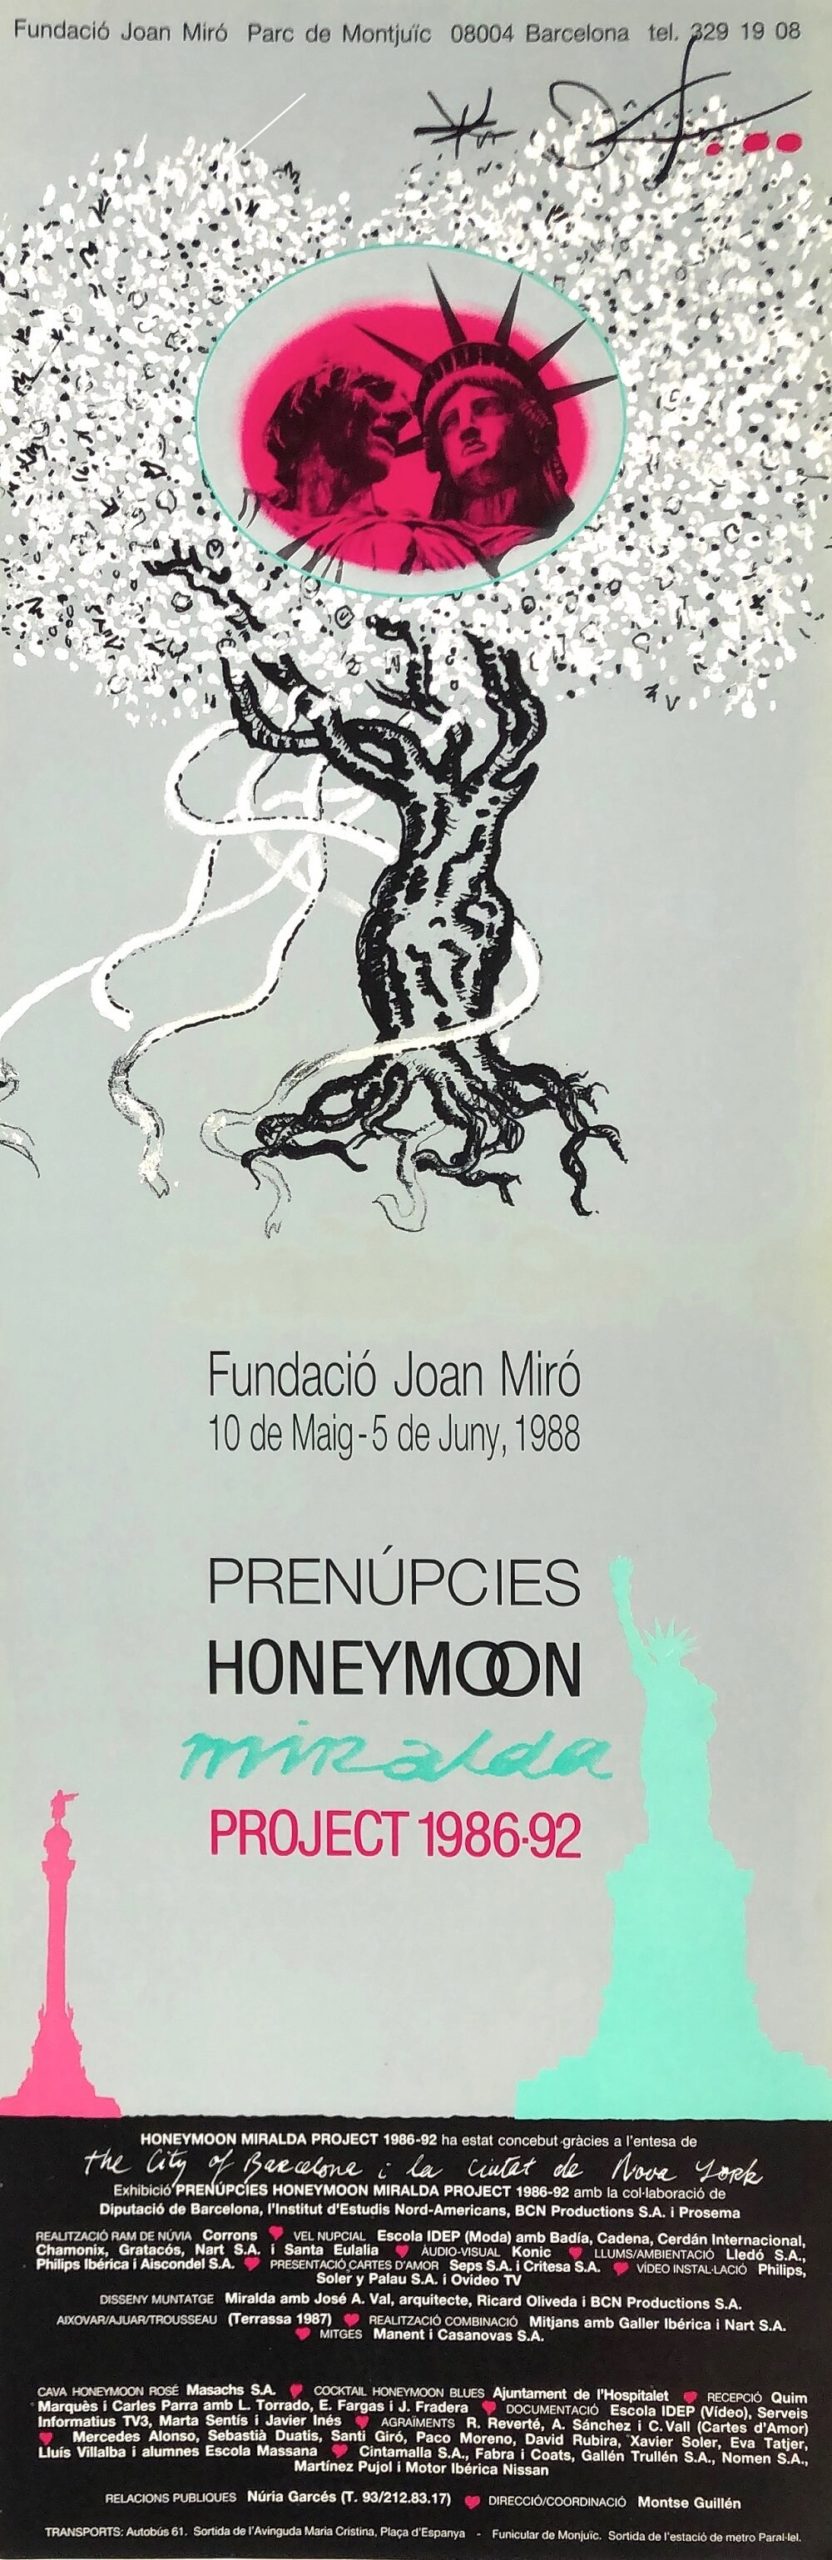 Antoni Miralda. Prenupcias,1988